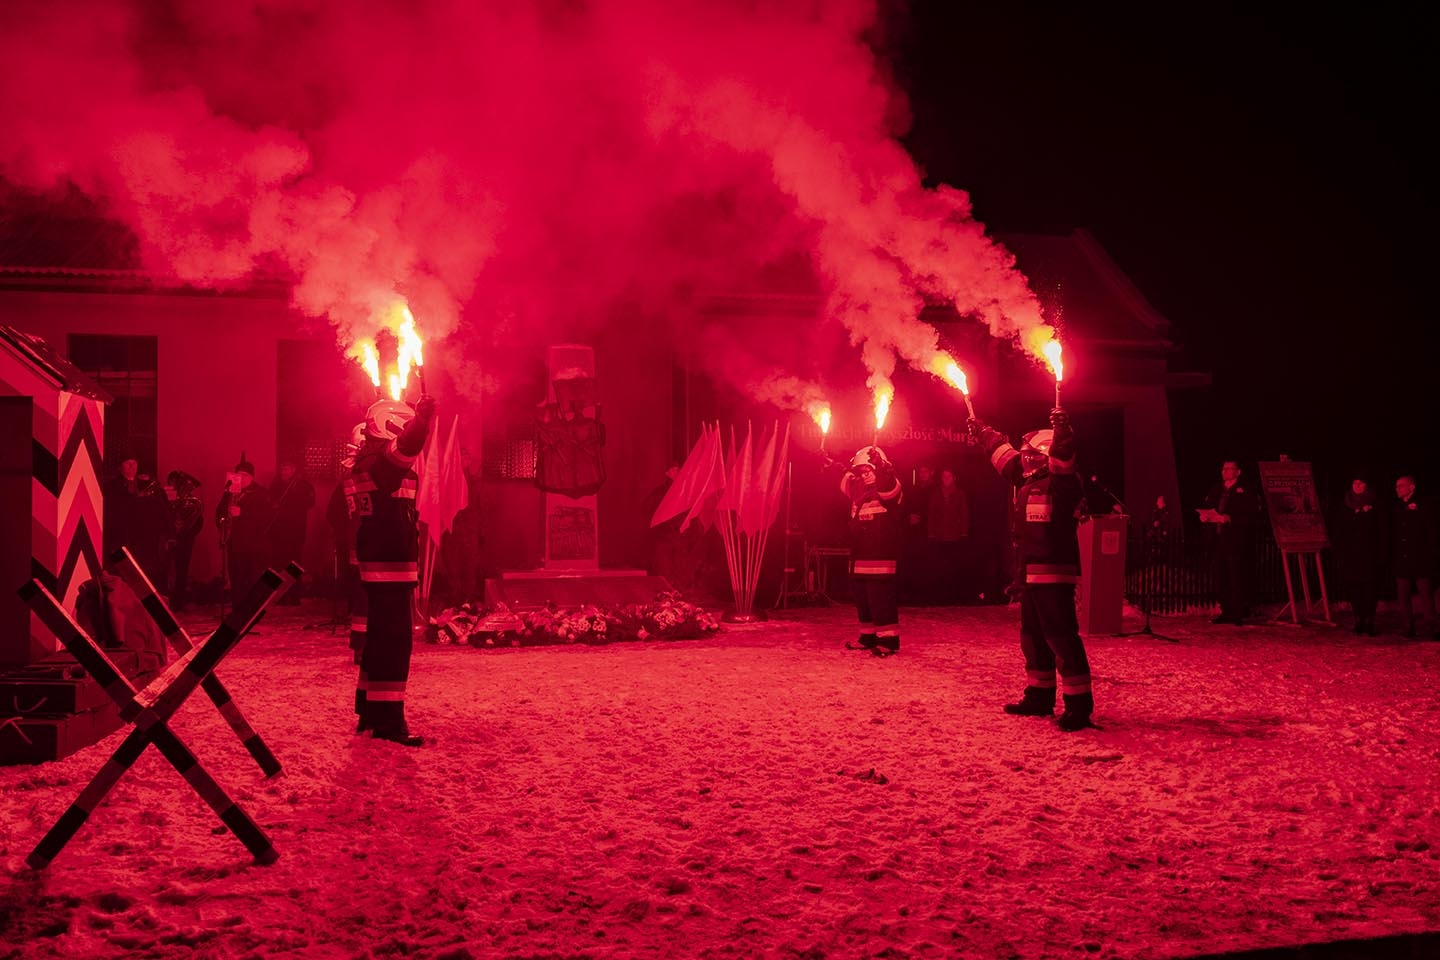 strażacy stojący naprzeciwko siebie, przed pomnikiem Powstańców Wielkopolskich, trzymający race płonące na czerwono